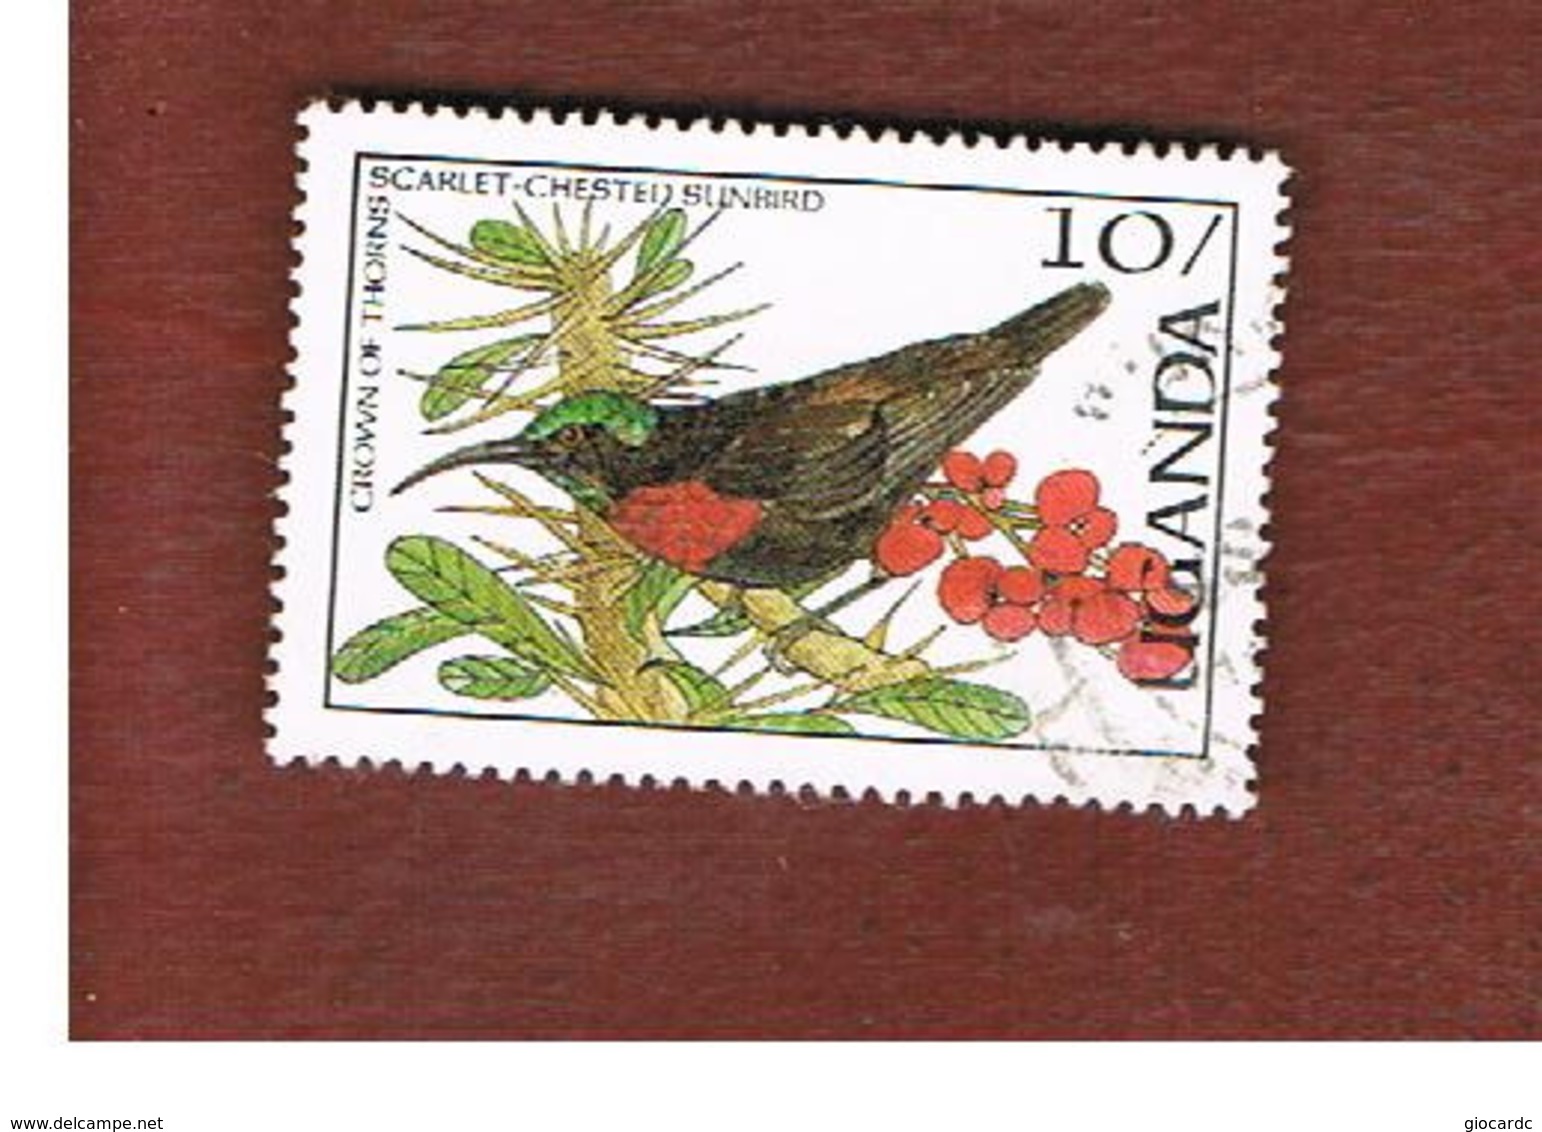 UGANDA   - SG 561   -  1987 BIRDS: SCARLET-CHESTED SUNBIRD      - USED ° - Uganda (1962-...)